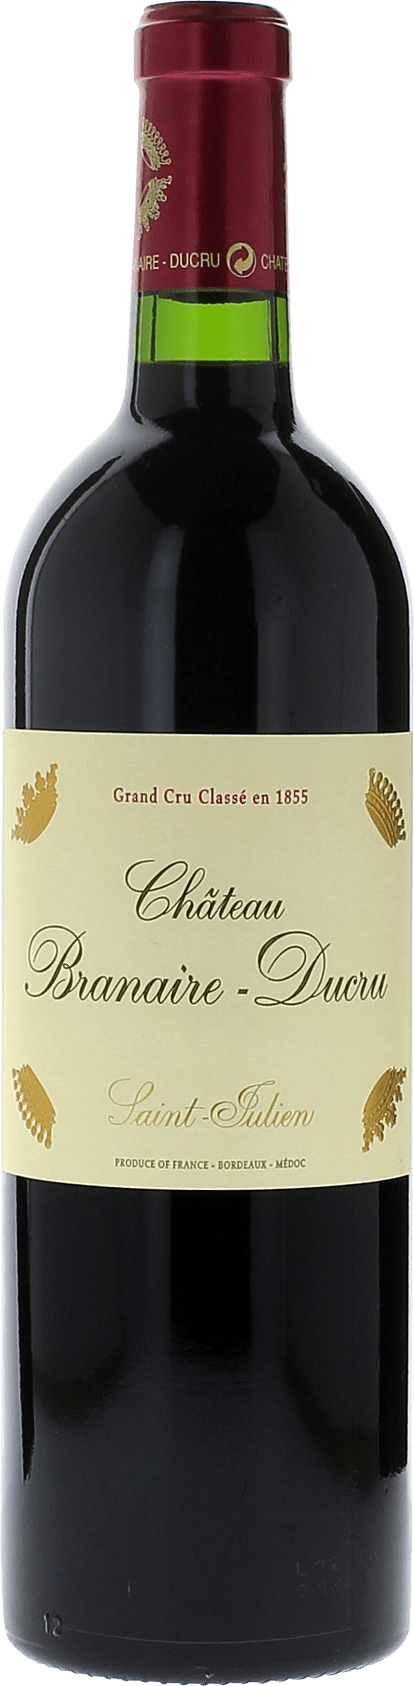 Branaire ducru 1993 4me Grand cru class Saint-Julien, Bordeaux rouge